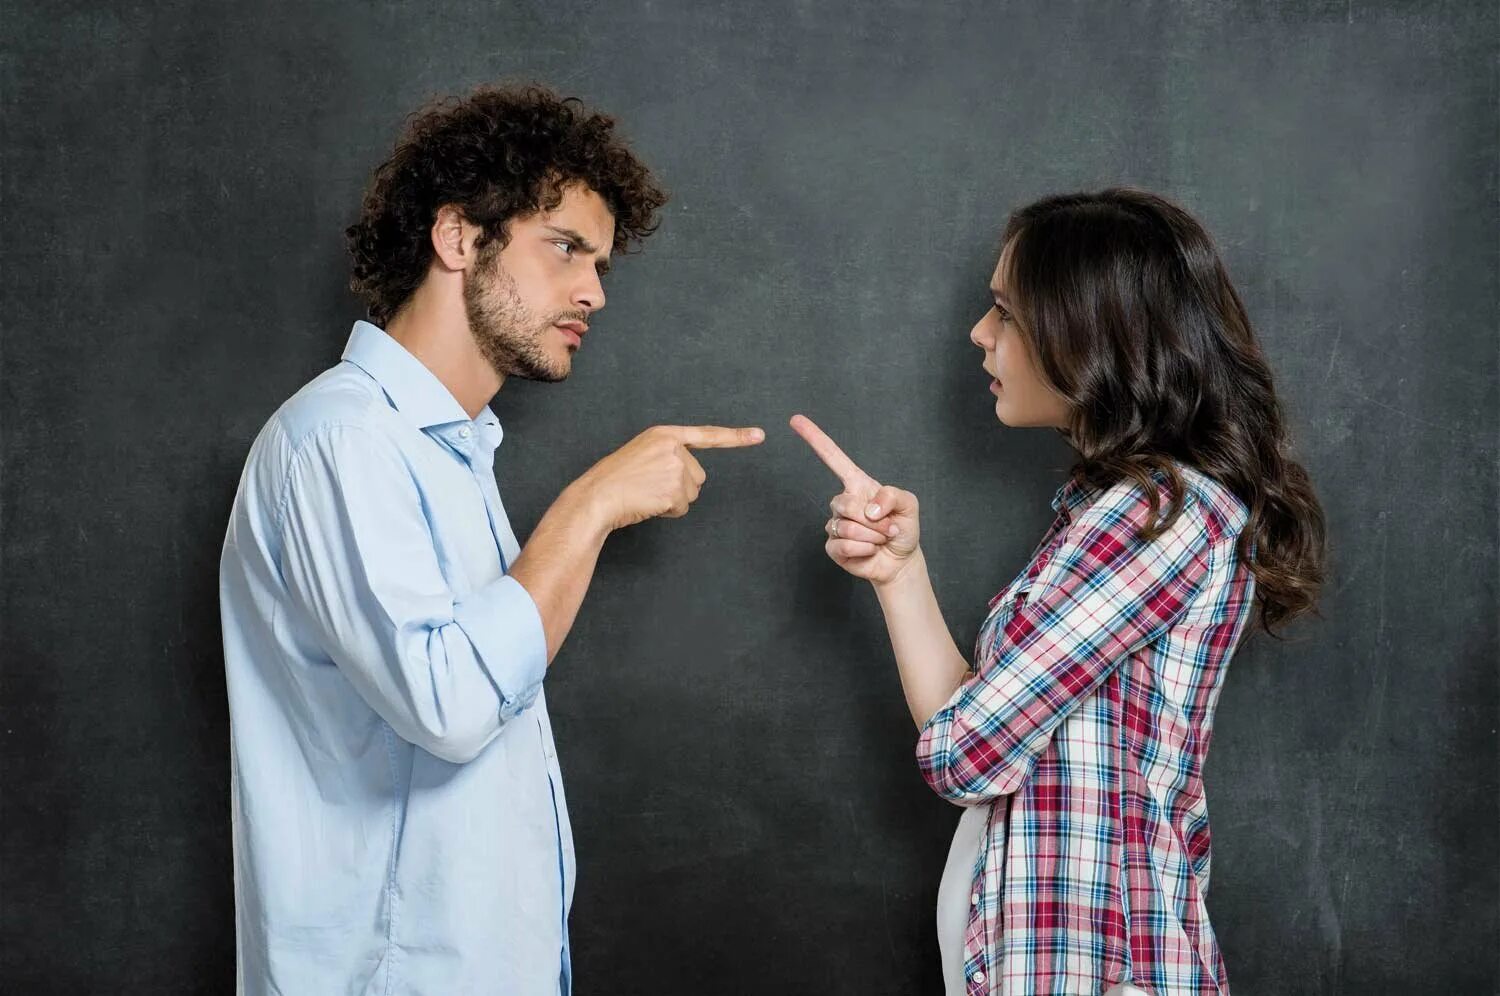 Конфликт. Люди спорят. Мужчина и женщина спорят. Спор между мужчиной и женщиной.